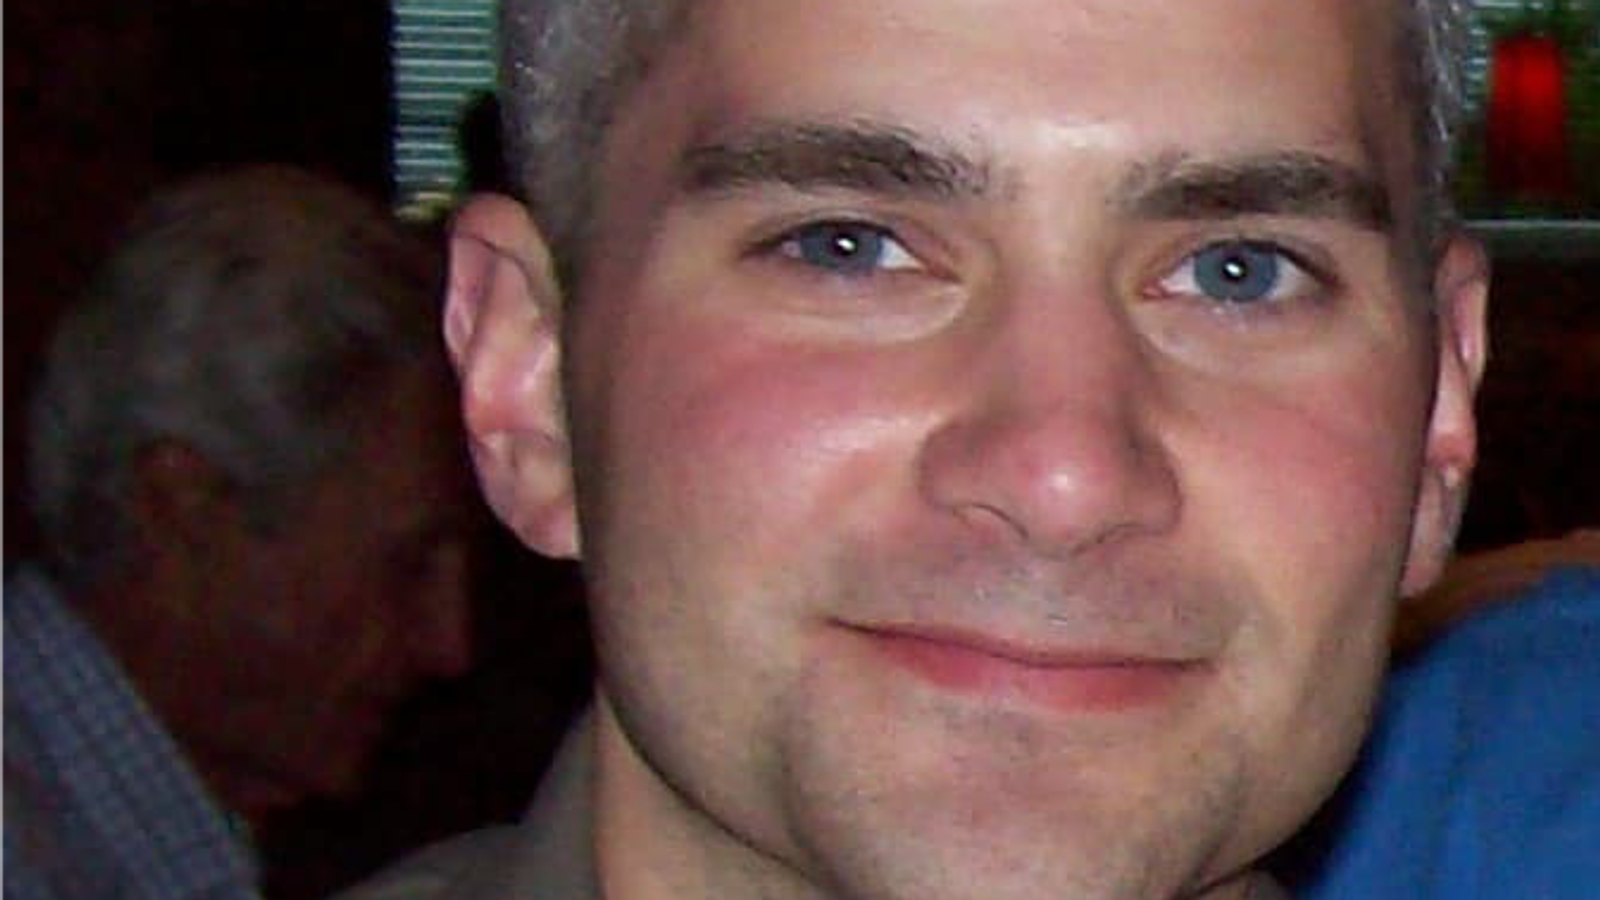 Rivolte nel Campidoglio degli Stati Uniti: l’agente Brian Secnick muore per cause naturali dopo il giorno dell’ammutinamento, le regole del coroner |  Notizie dagli Stati Uniti